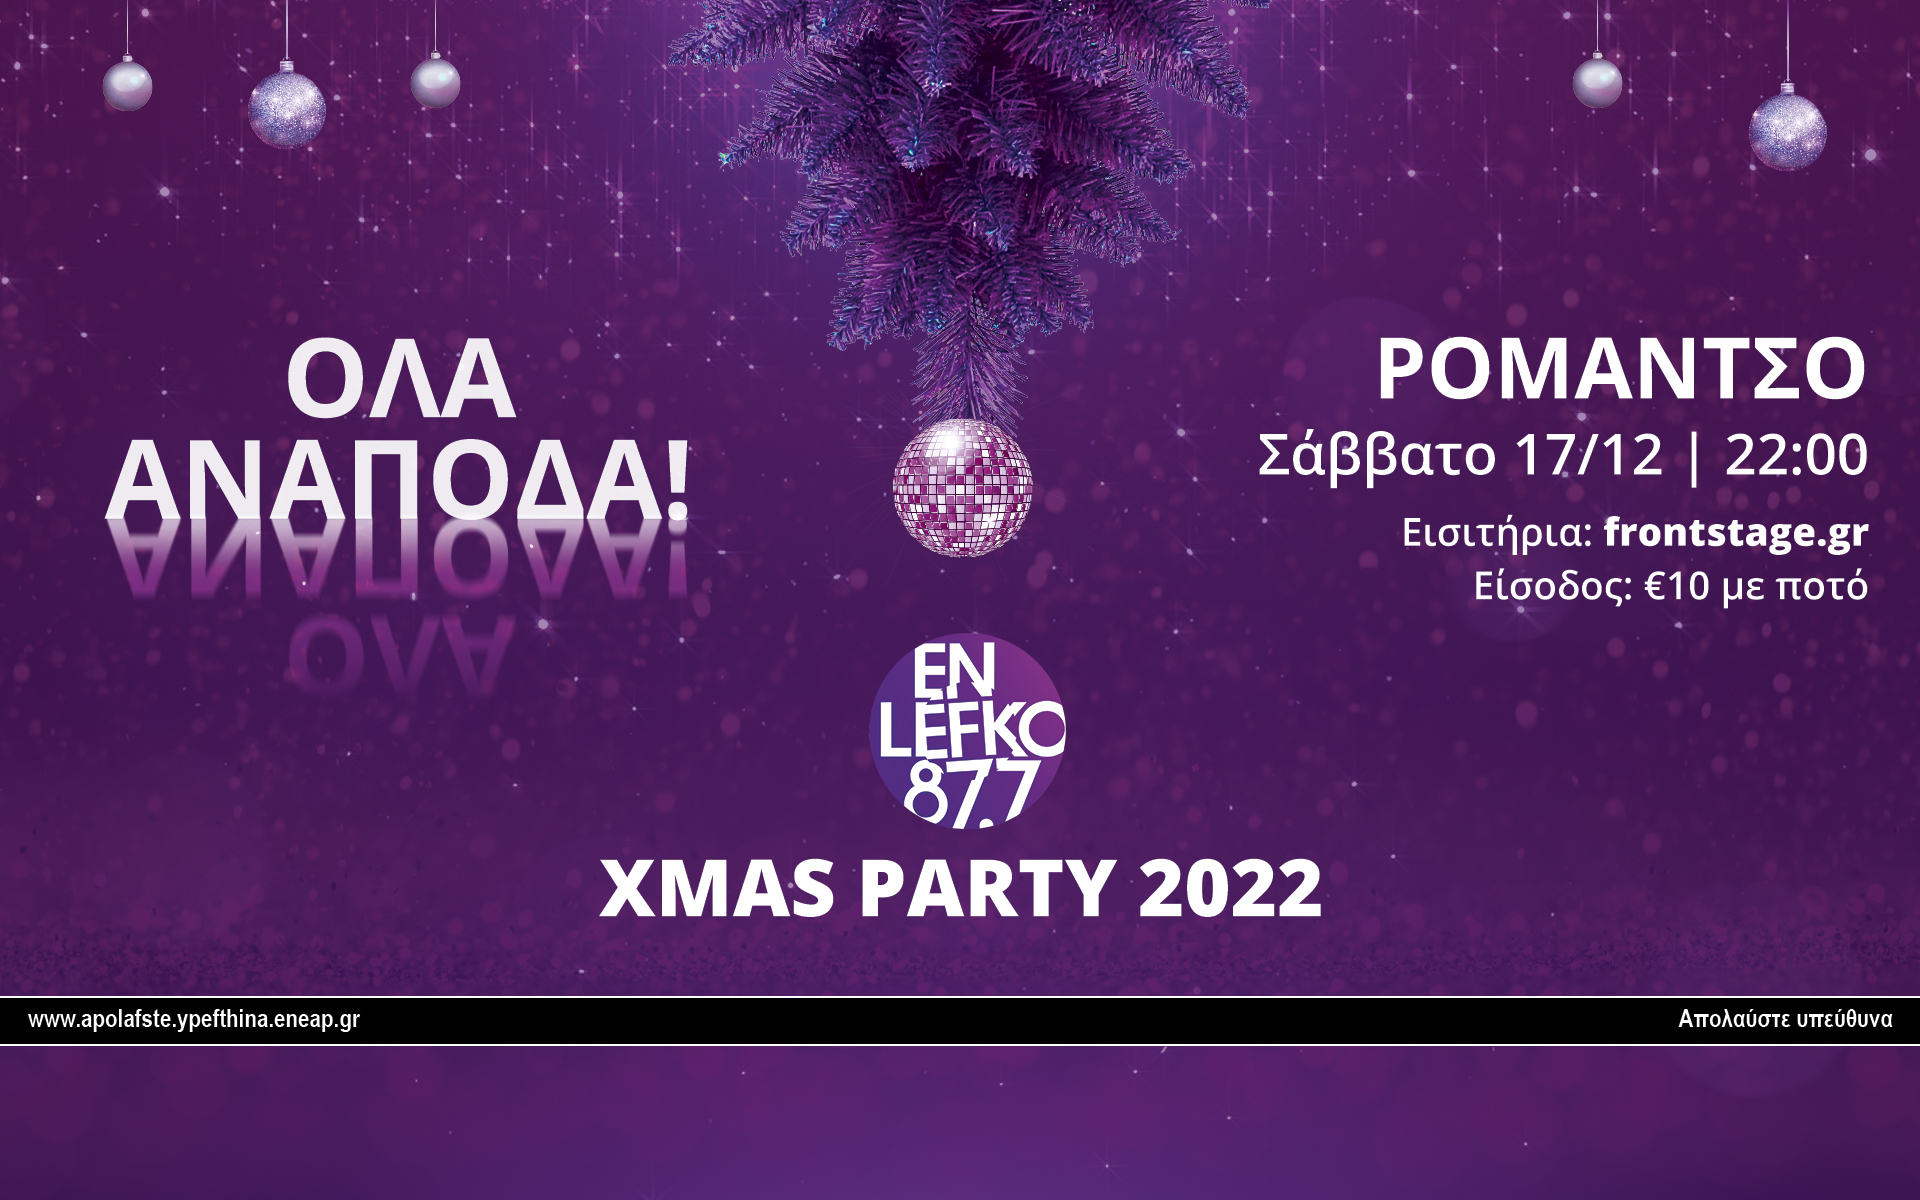 φέτος-στο-xmas-party-του-en-lefko-87-7-θα-είναι-ολα-αναποδ-562174585